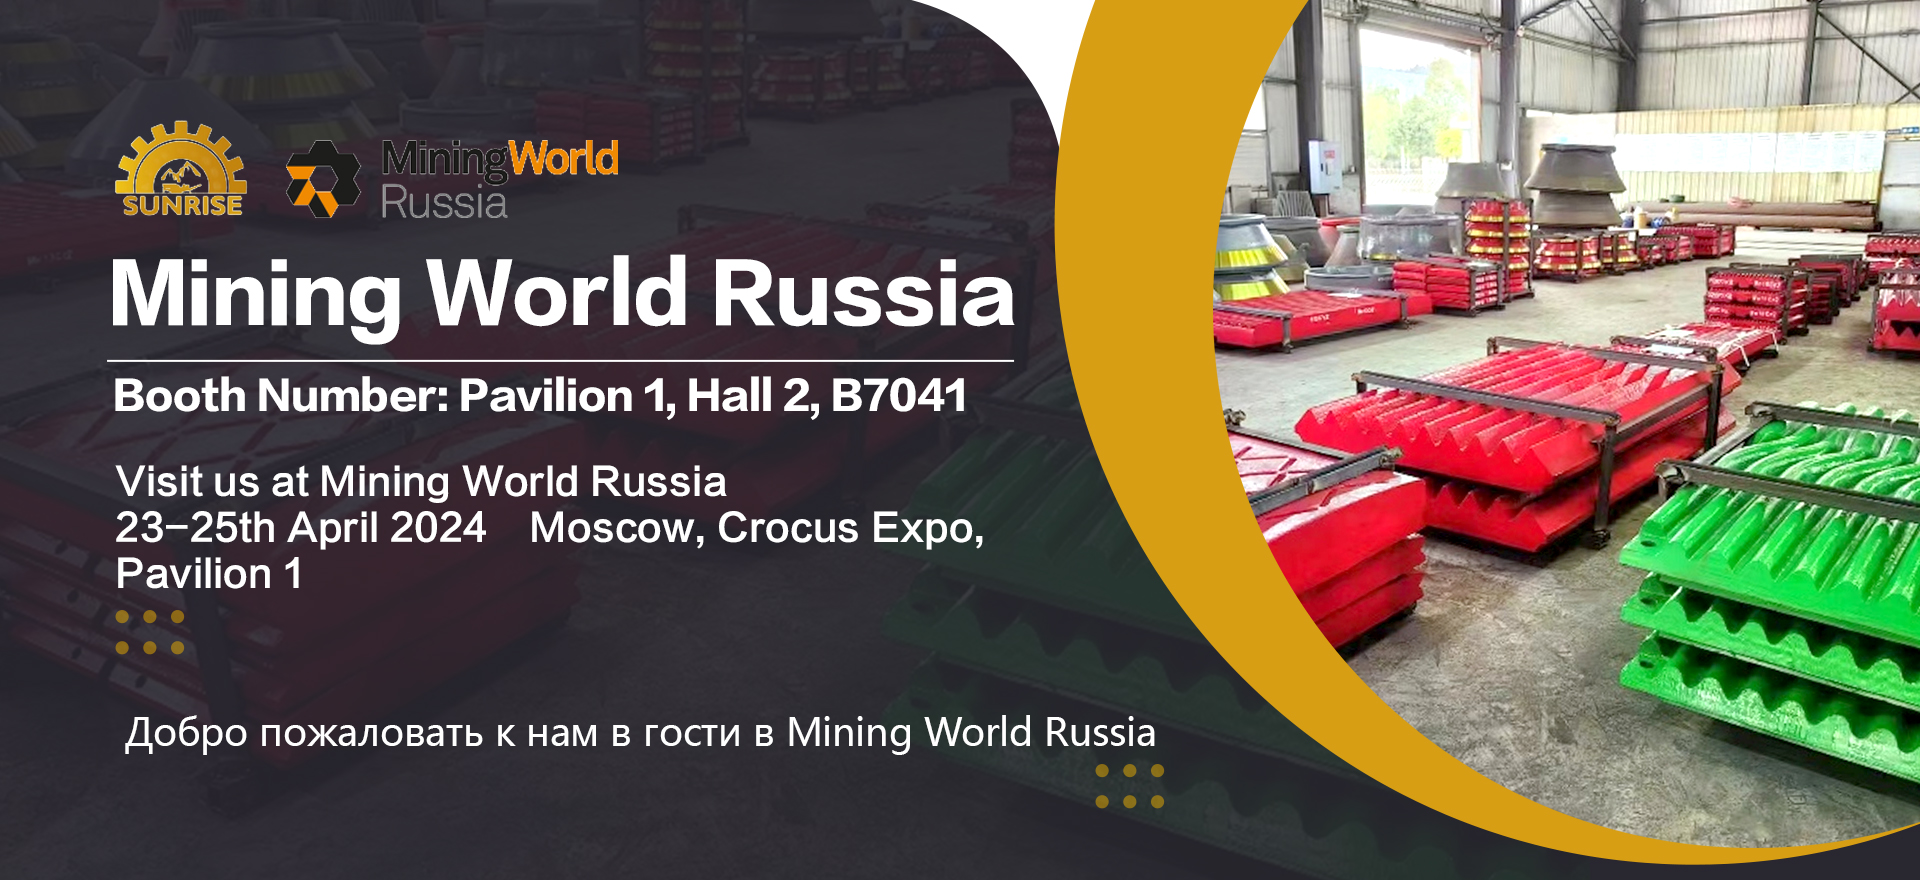 Sunrise Machinery Mining World Russia 2024 සඳහා සහභාගී වනු ඇත